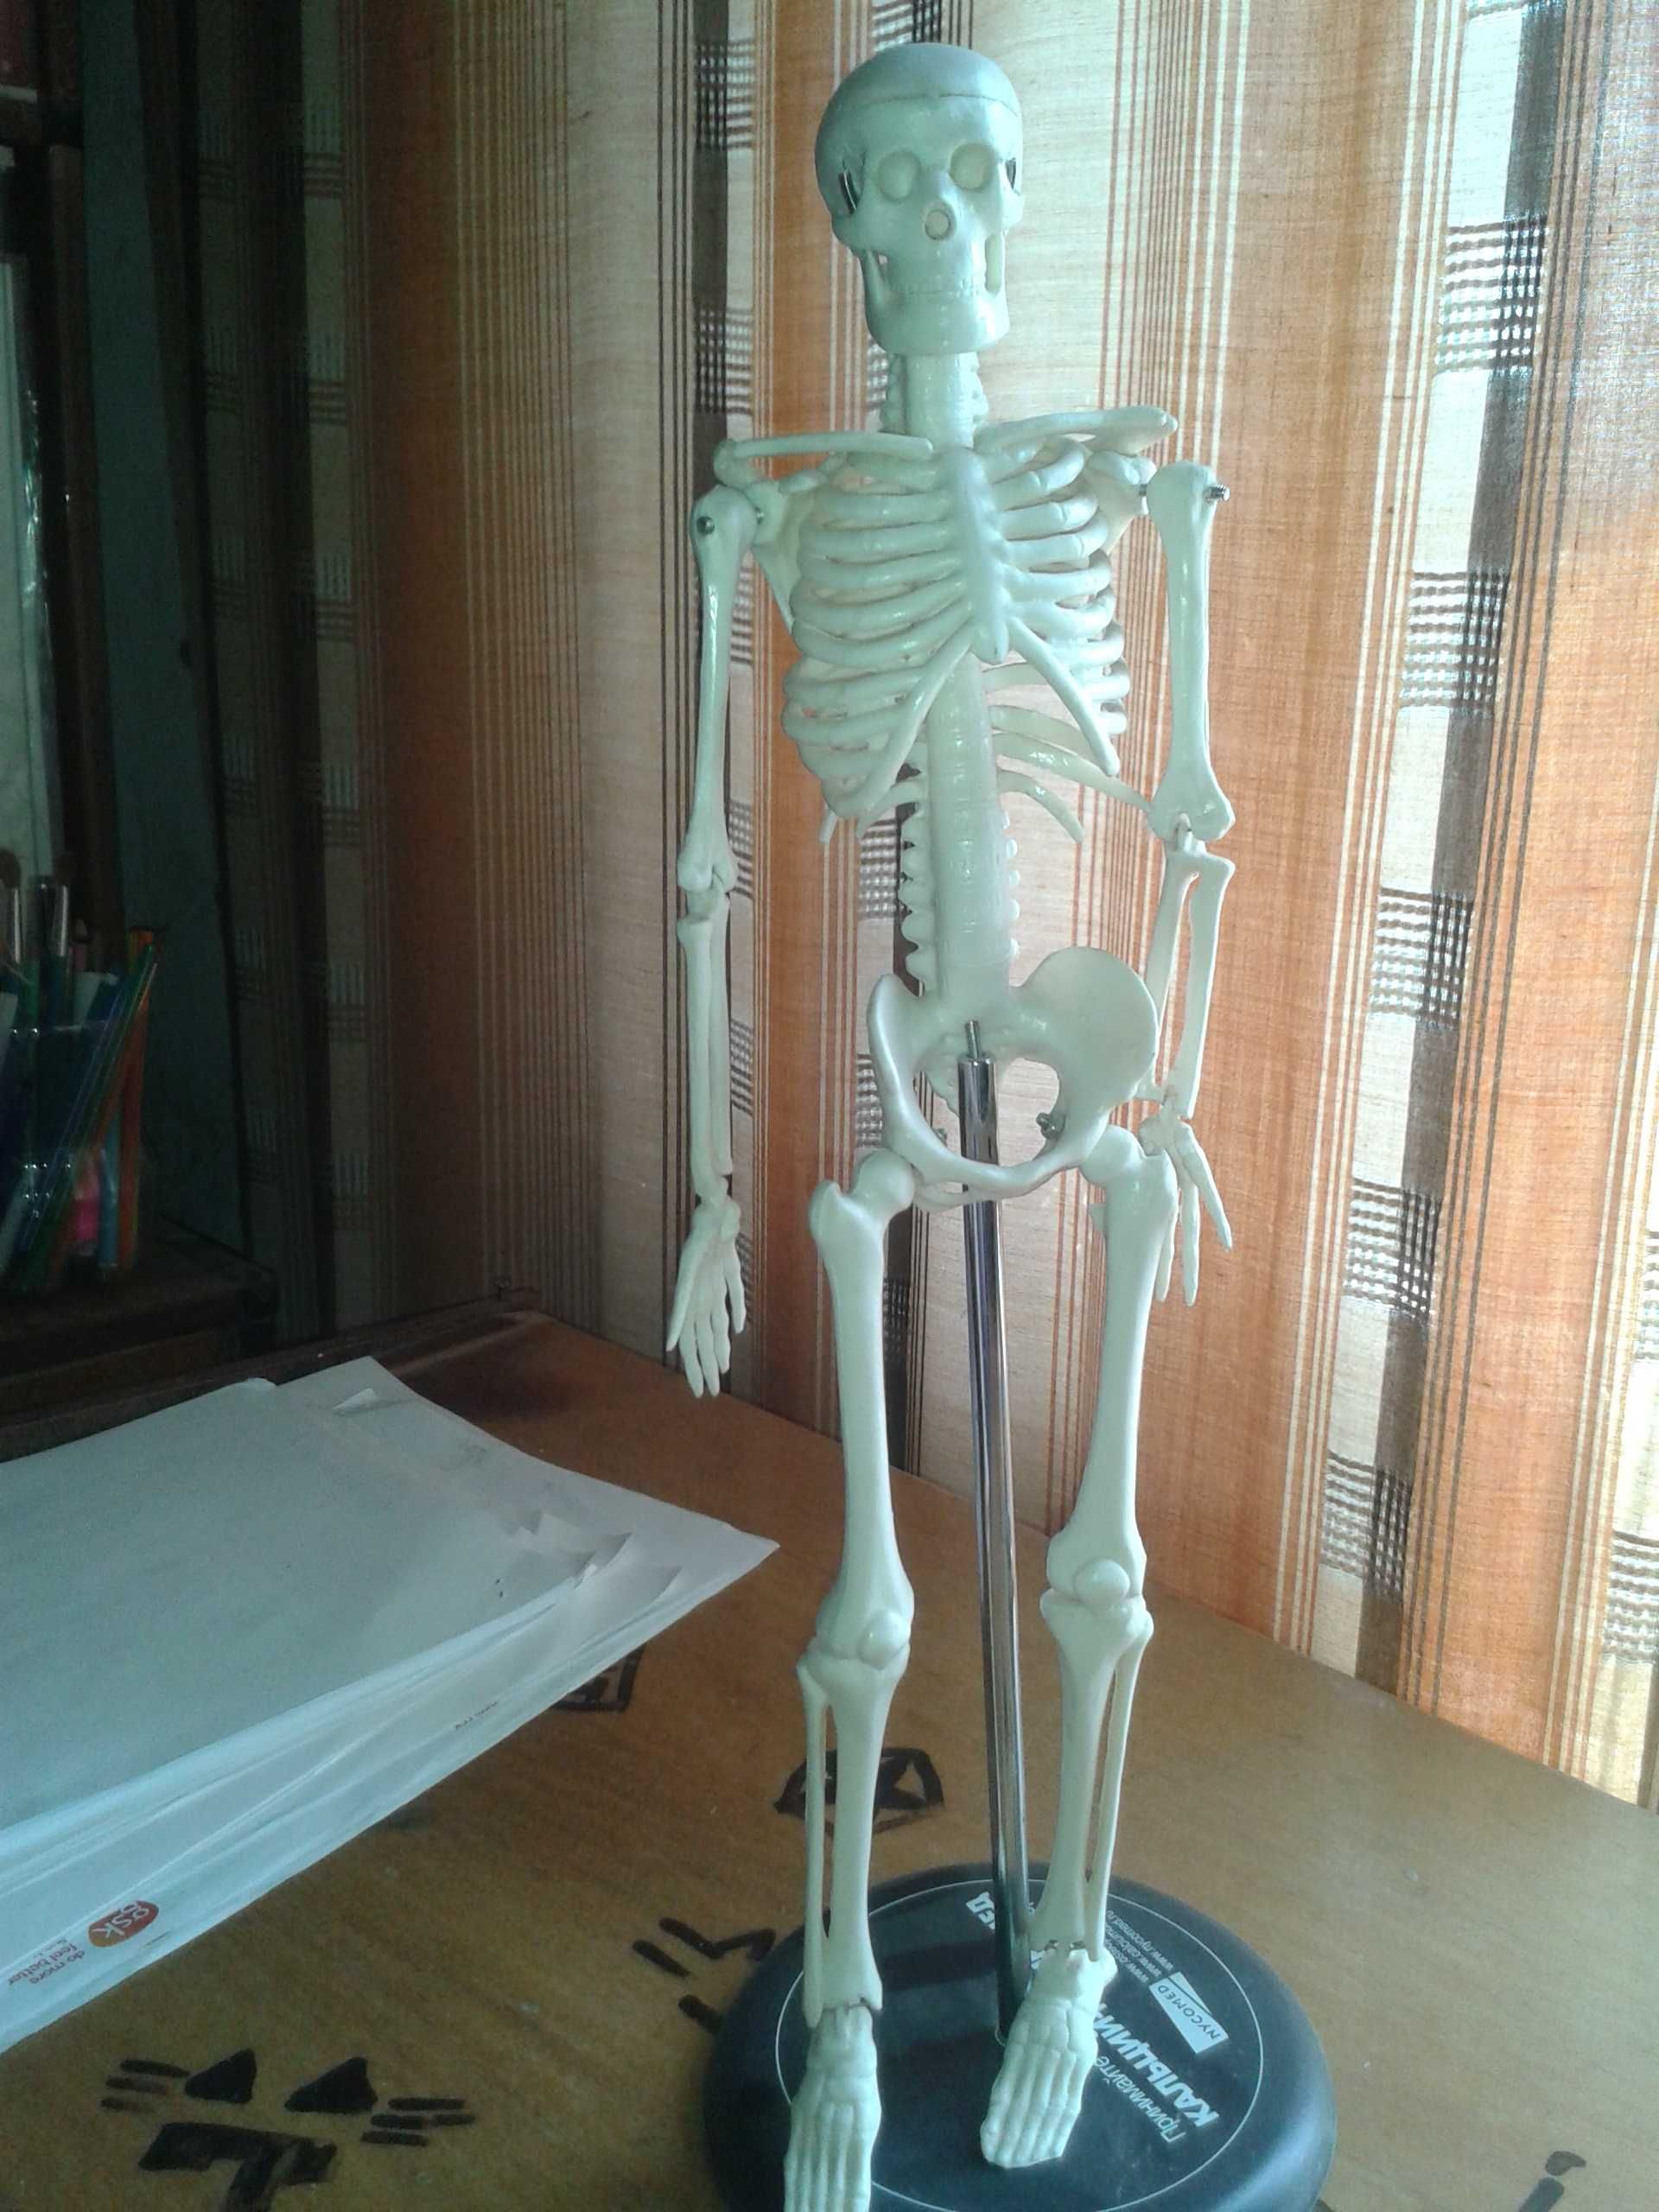 ЙОРИК модель скелета человека 45см учебн\сувенир НОВАЯ в уп-ке